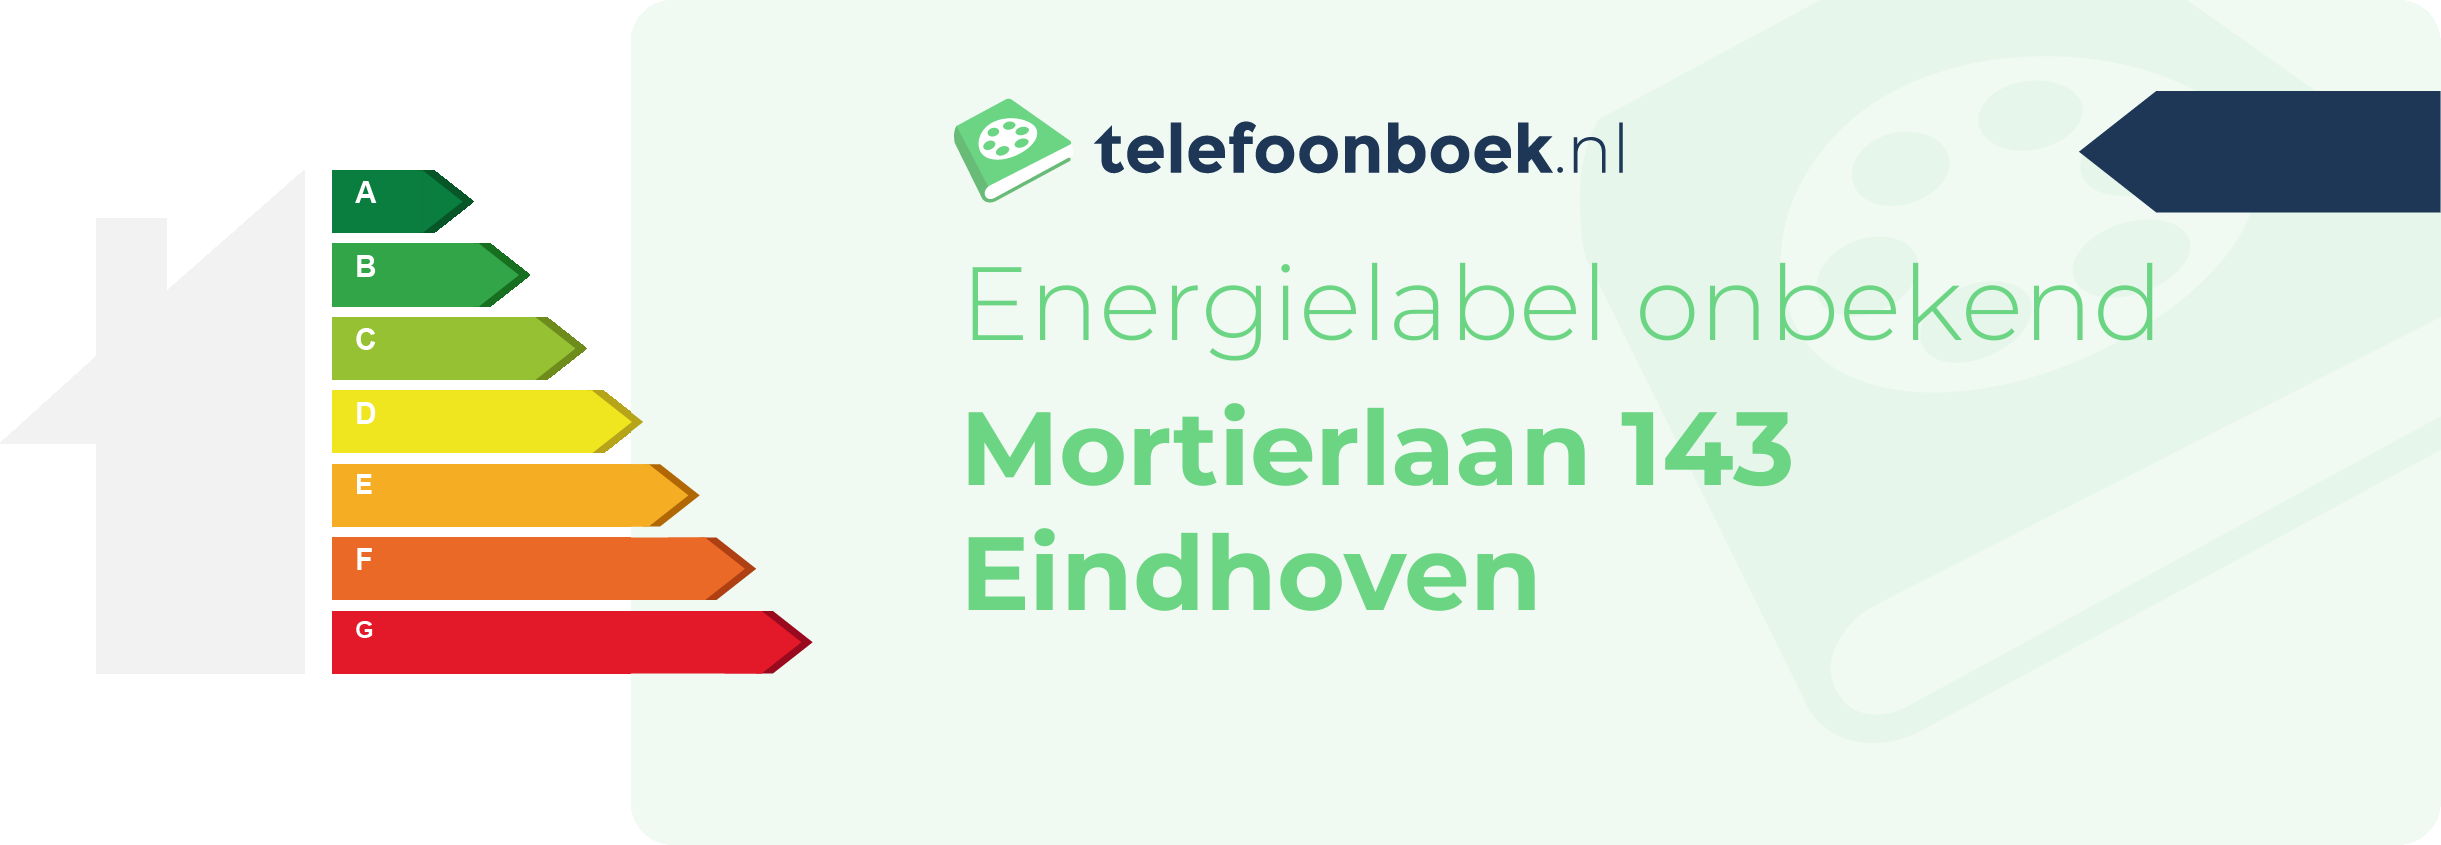 Energielabel Mortierlaan 143 Eindhoven